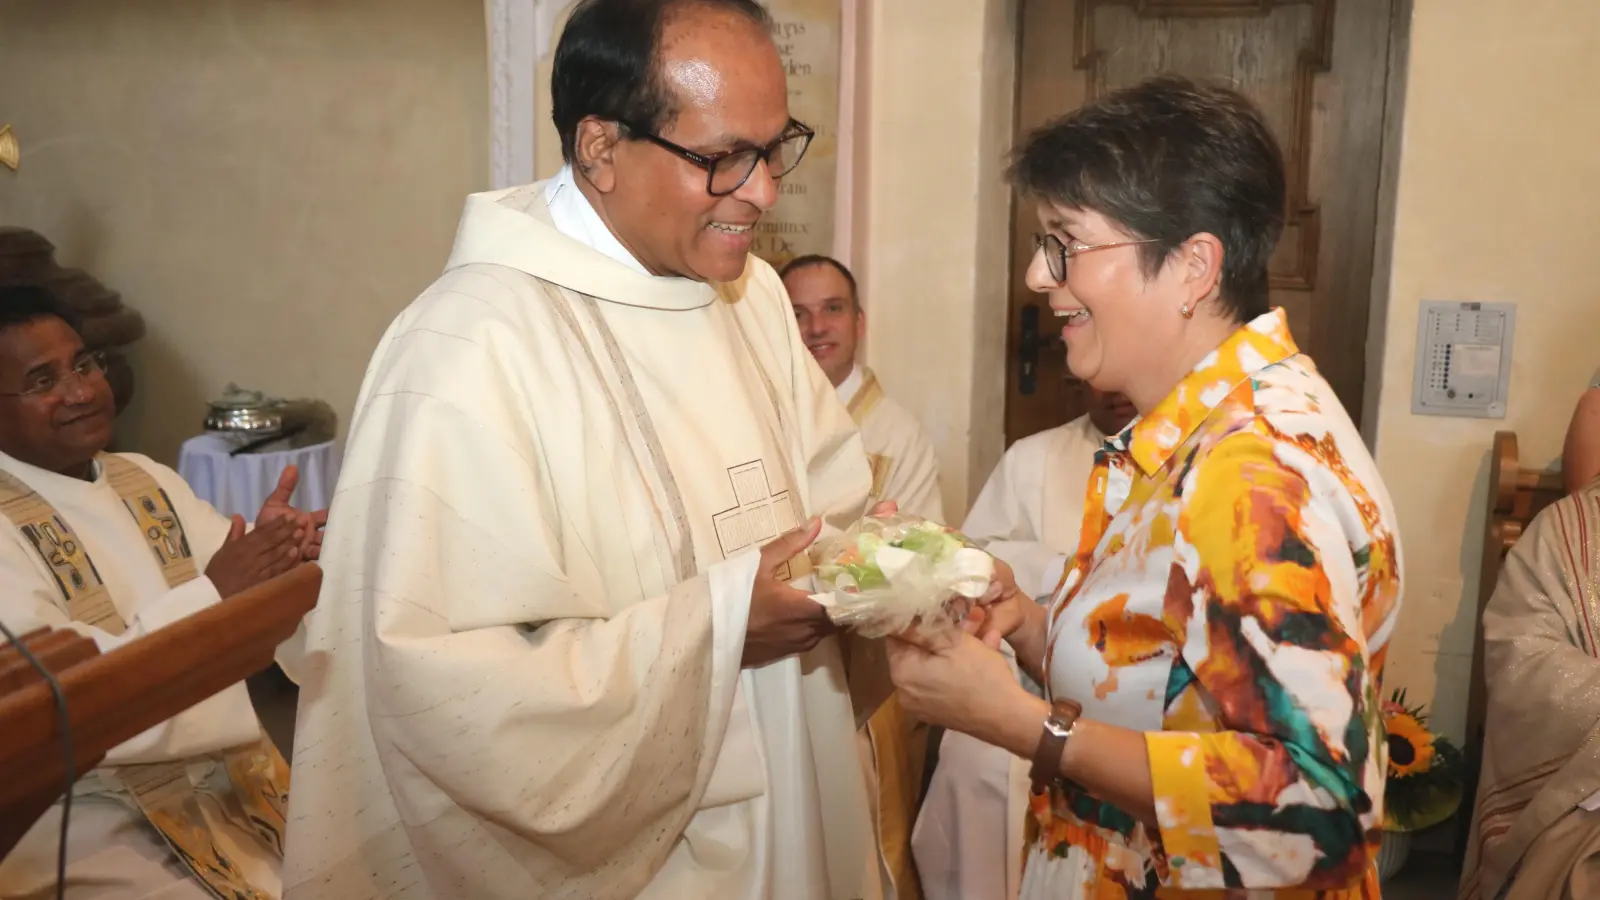  <b>Ein Willkommensgeschenk</b> erhielt Pater Thomas Payappan von der Pastoralratsvorsitzenden Susanne Pfundmeir. (Foto: Josef Abt)